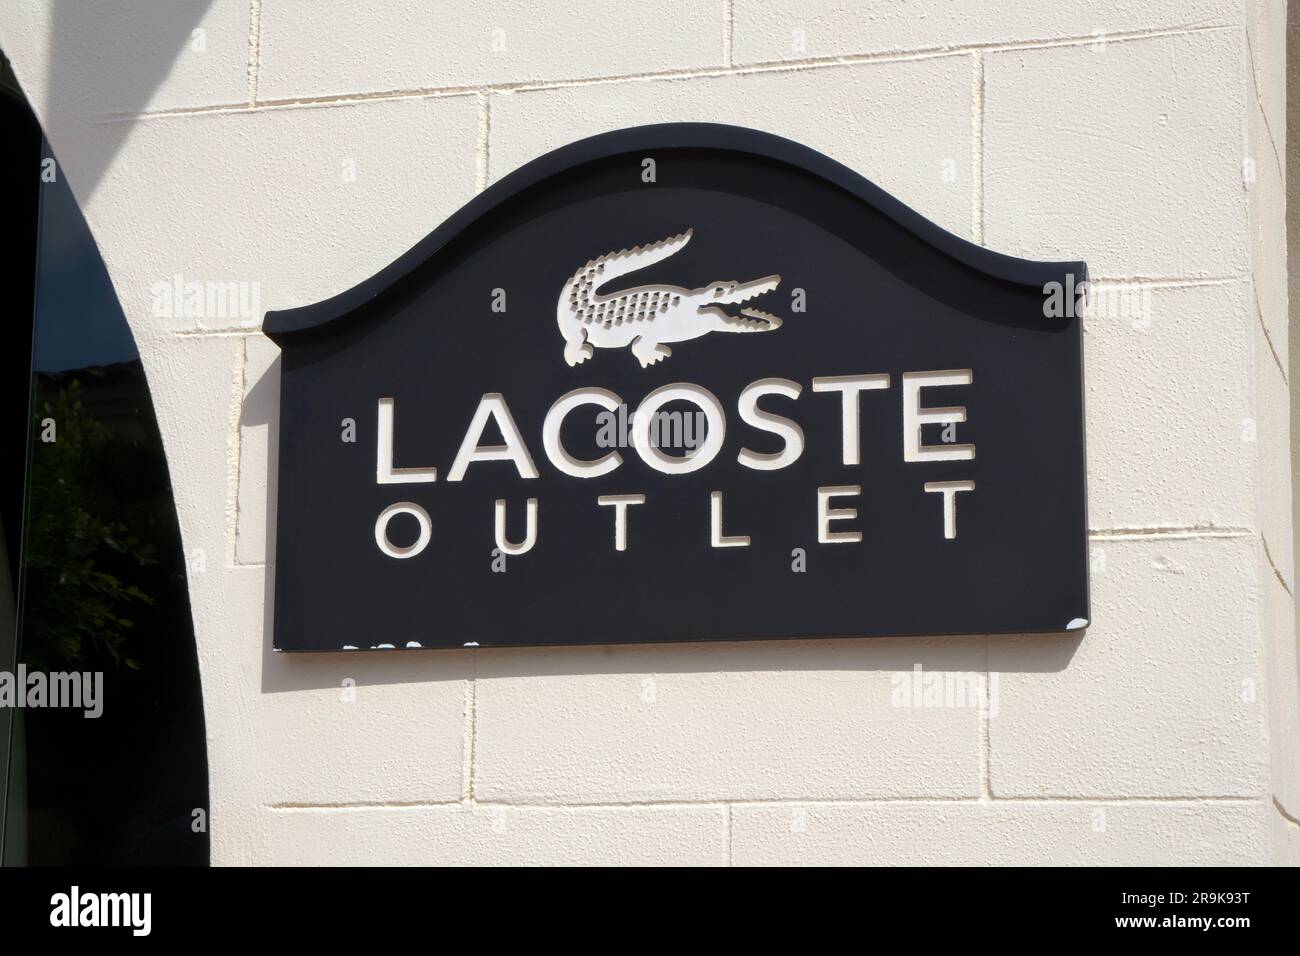 Palma de Mallorca, Spagna - 23 settembre 2017: Logo del negozio outlet Lacoste. Lacoste è un'azienda francese che vende abbigliamento, calzature, abbigliamento sportivo e occhiali. Foto Stock